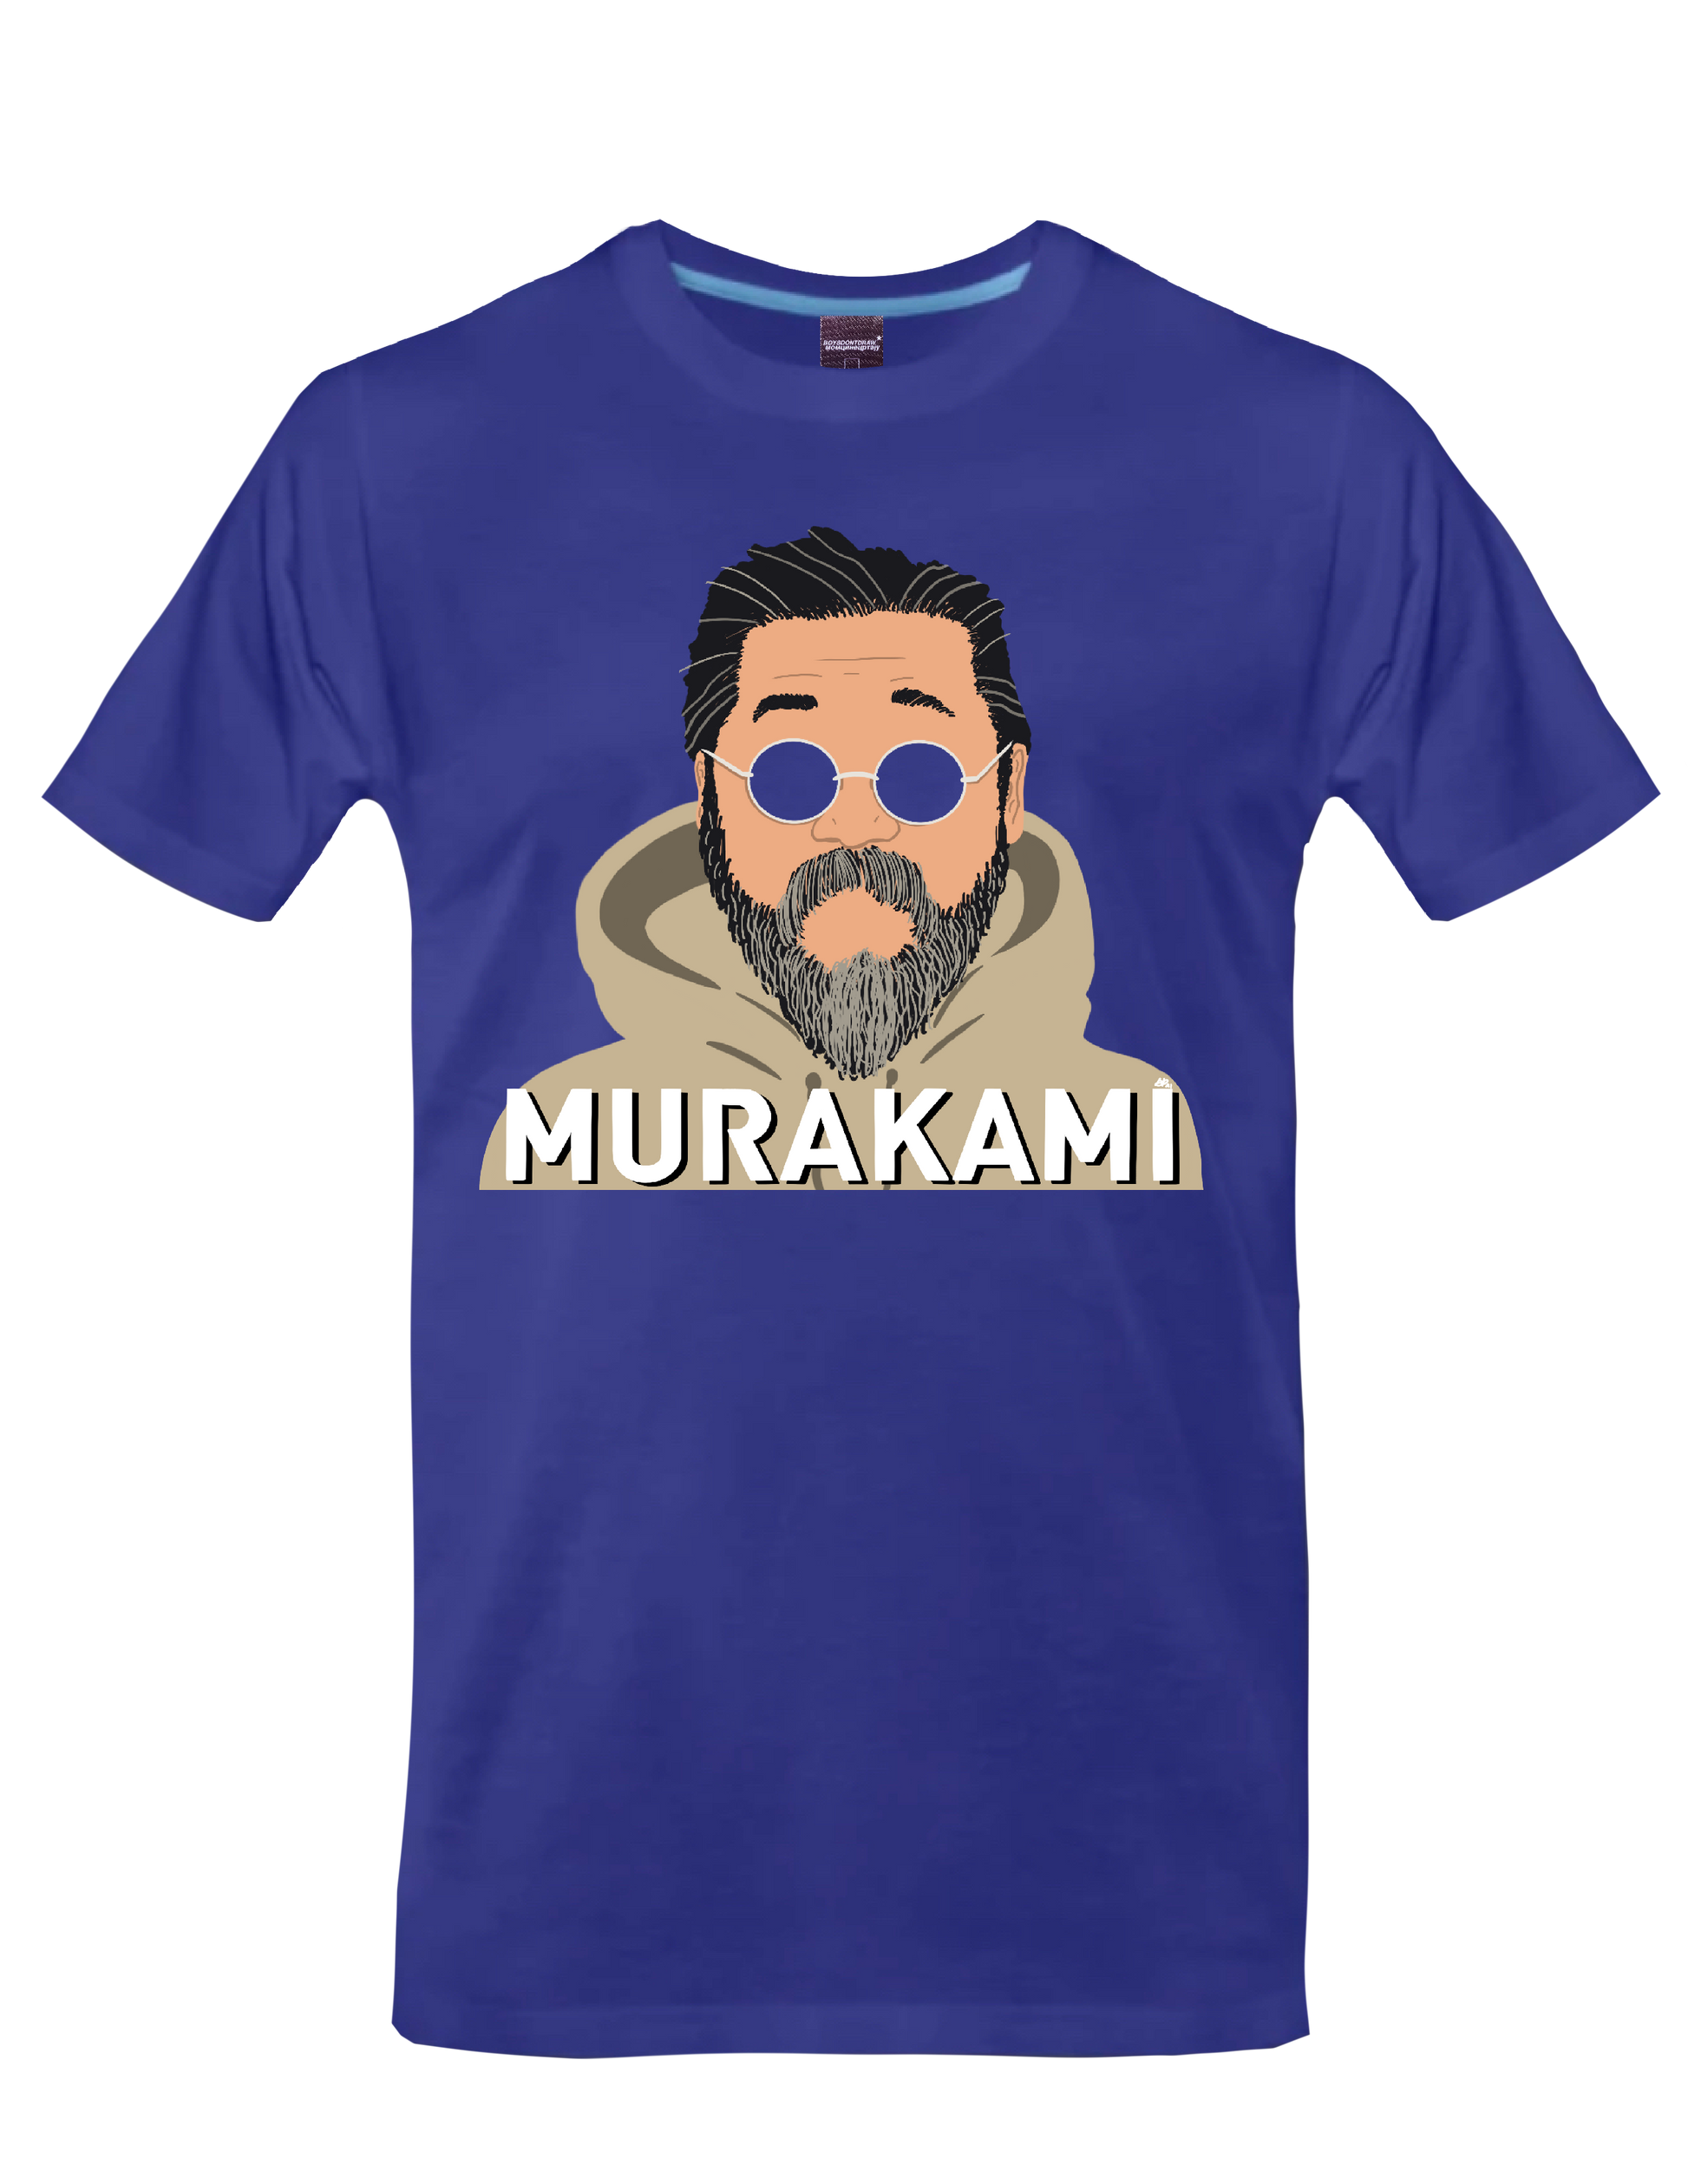 TAKASHI MURAKAMI - MURAKAMI* - T-Shirt by BOYSDONTDRAW